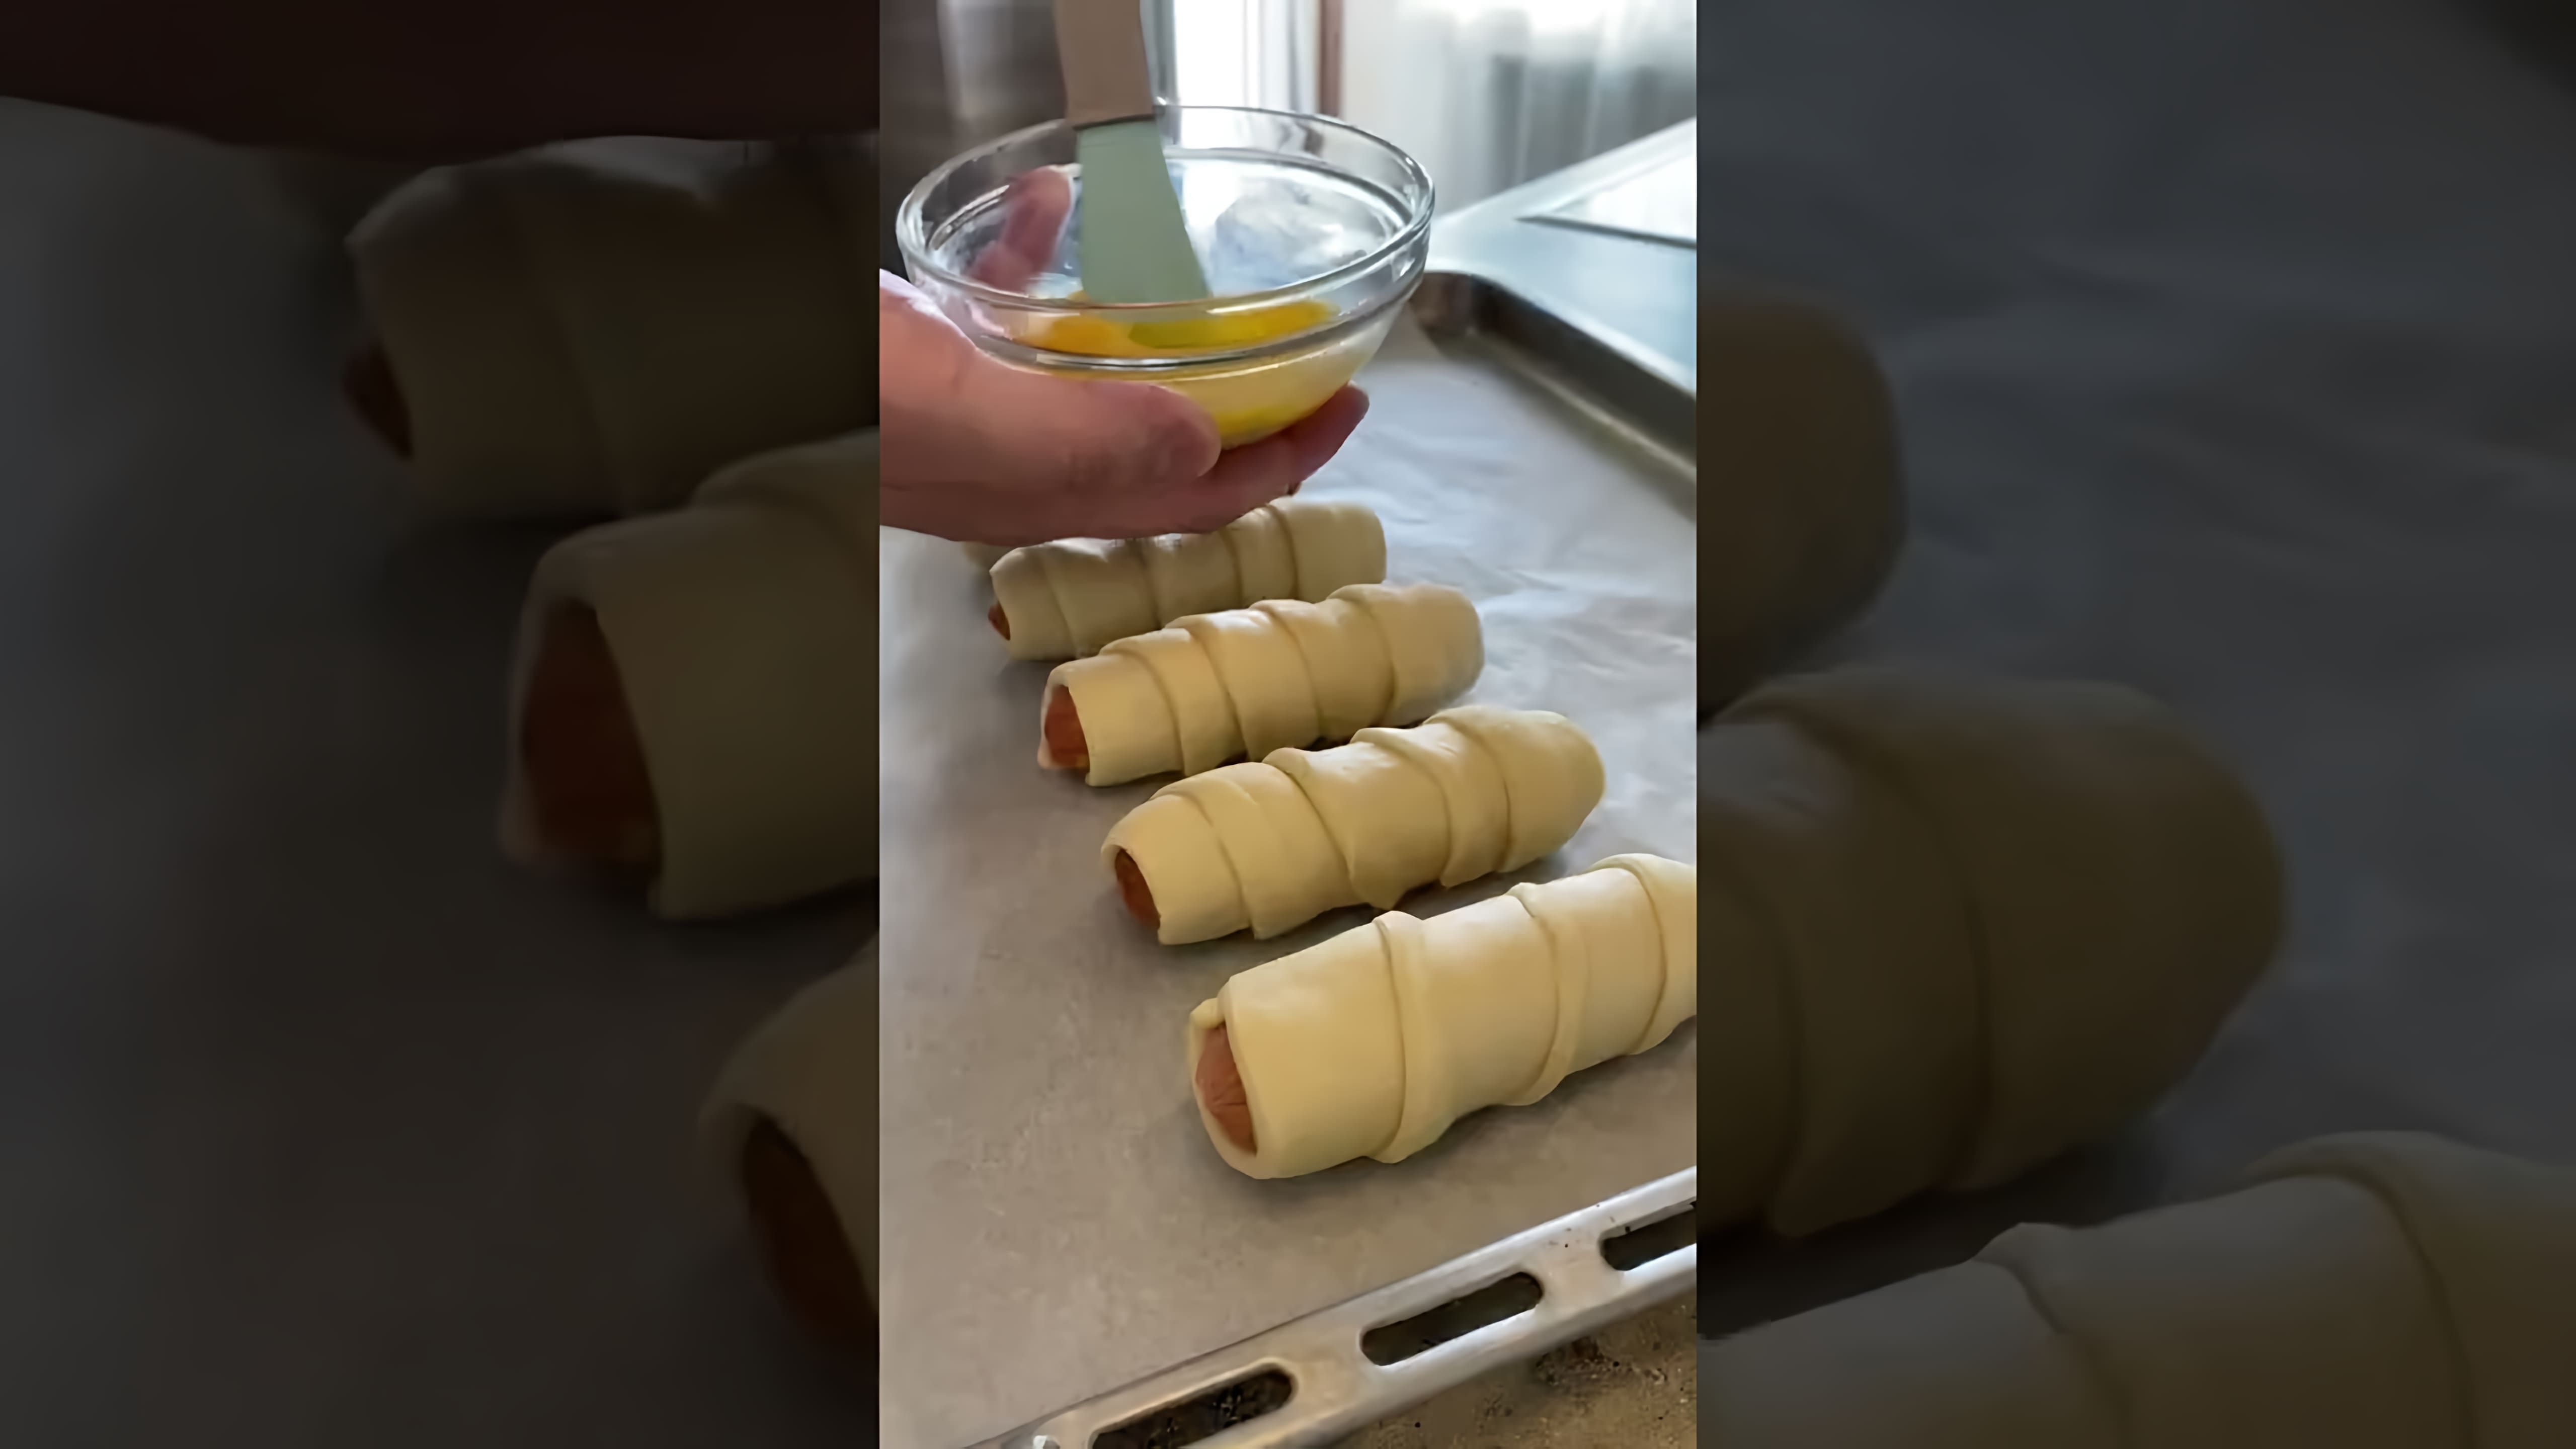 В этом видео демонстрируется рецепт приготовления сосисок в тесте на бездрожжевом тесте